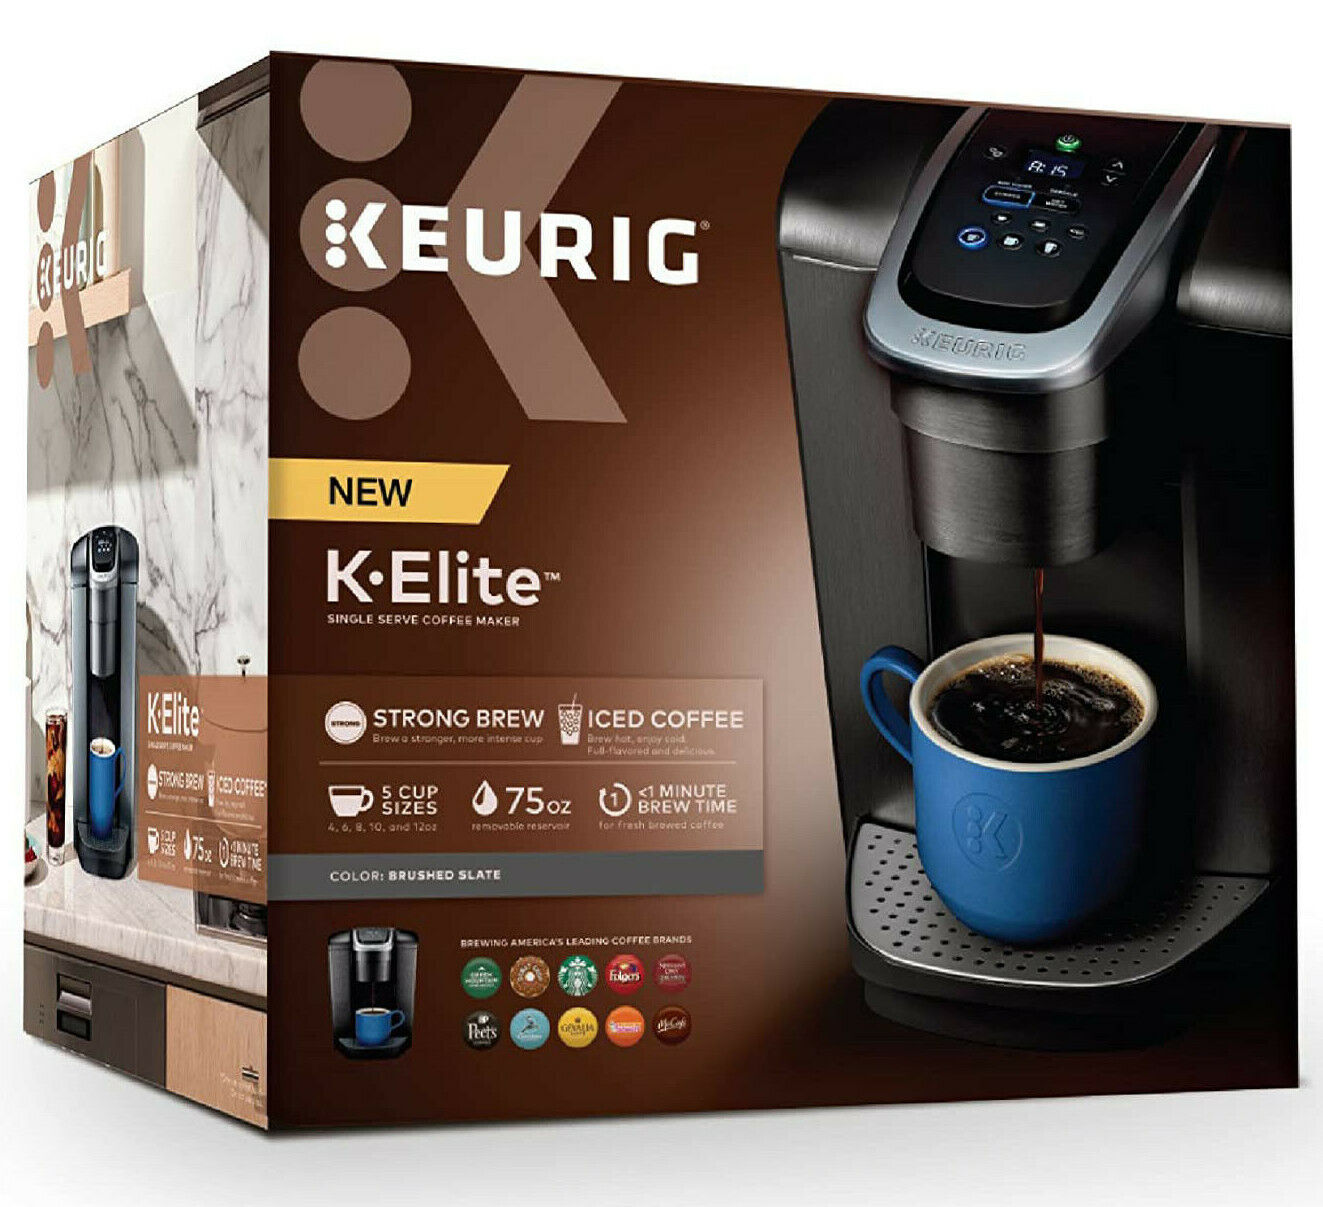 Keurig K-iced Brewer, Single-serve Coffee Makers